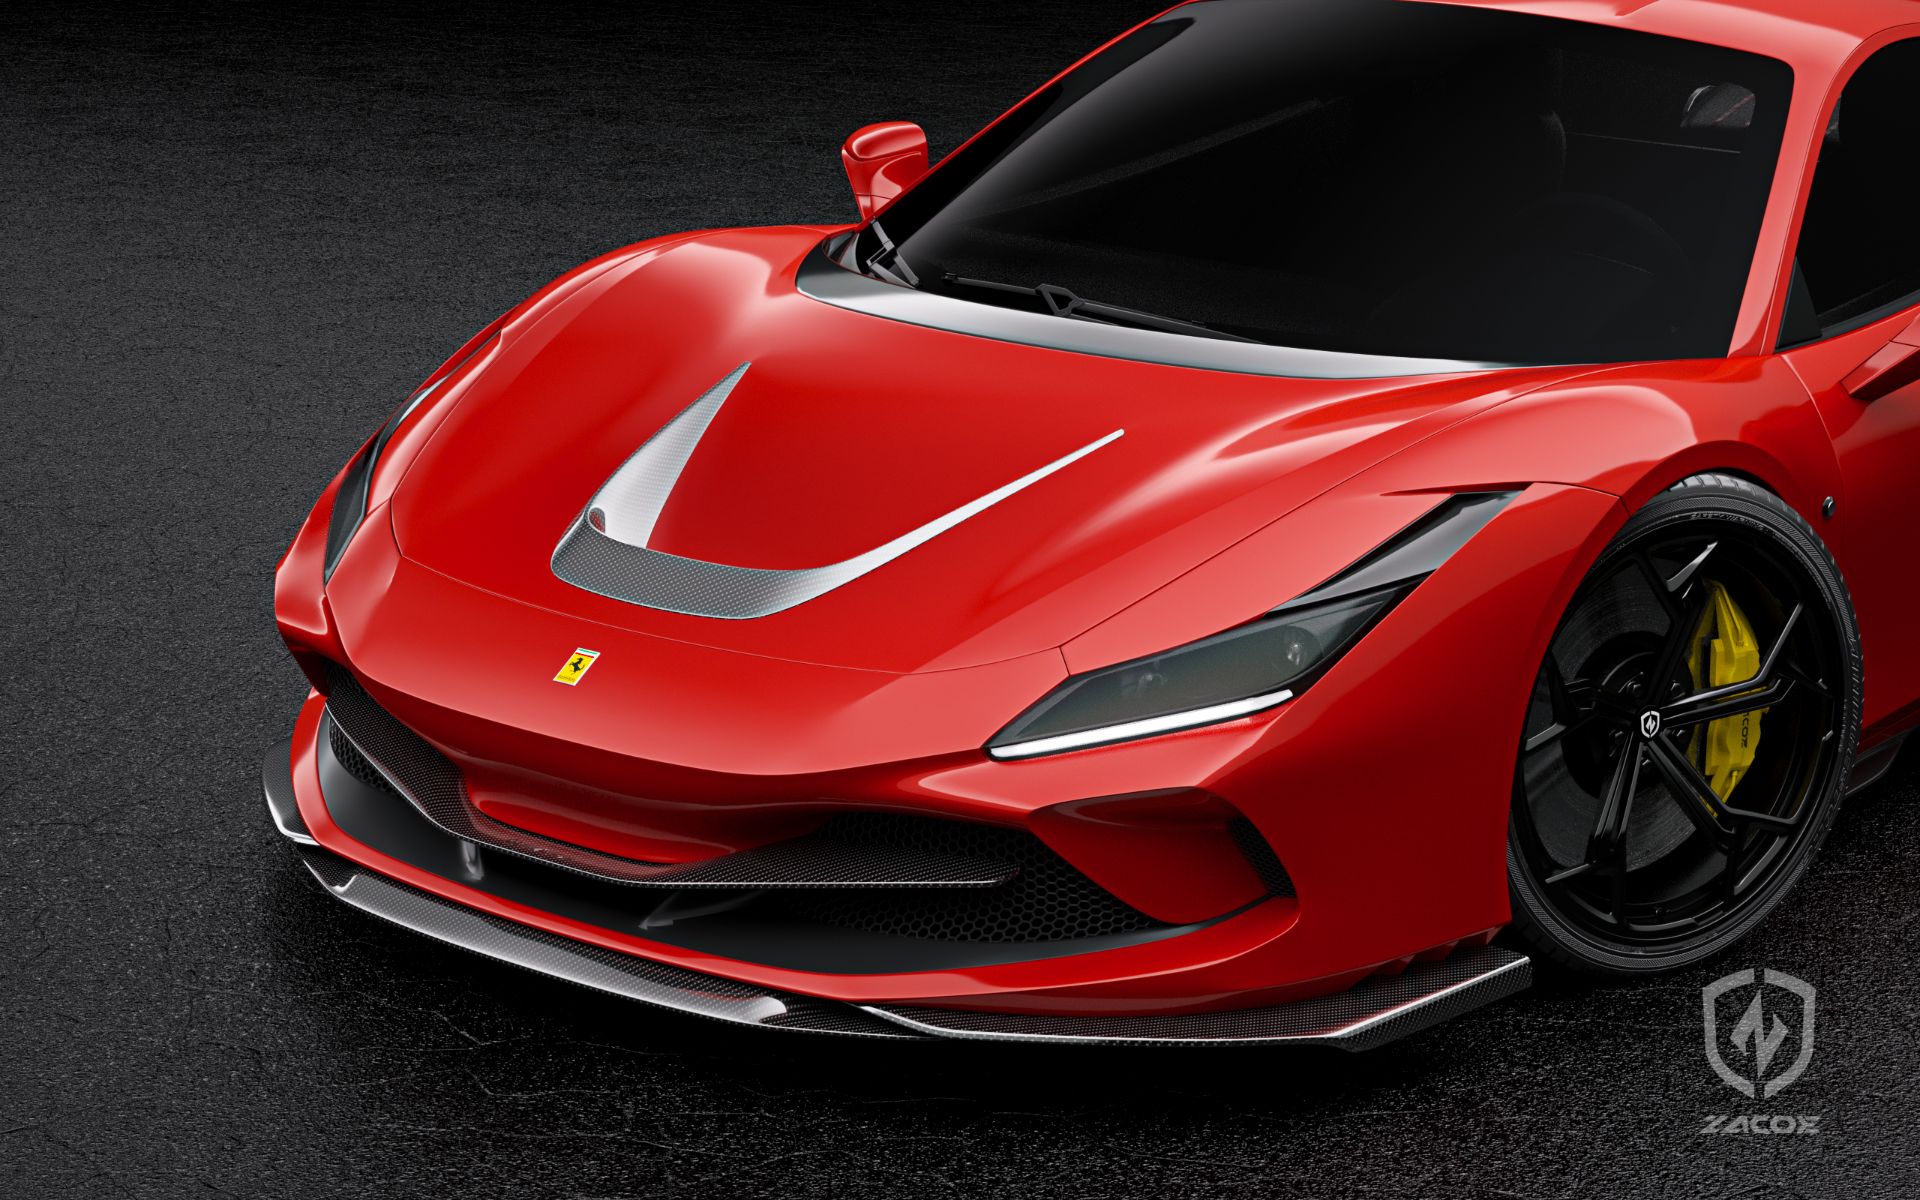 Siêu xe Ferrari F8 Tributo nổi bật với phụ kiện từ sợi carbon